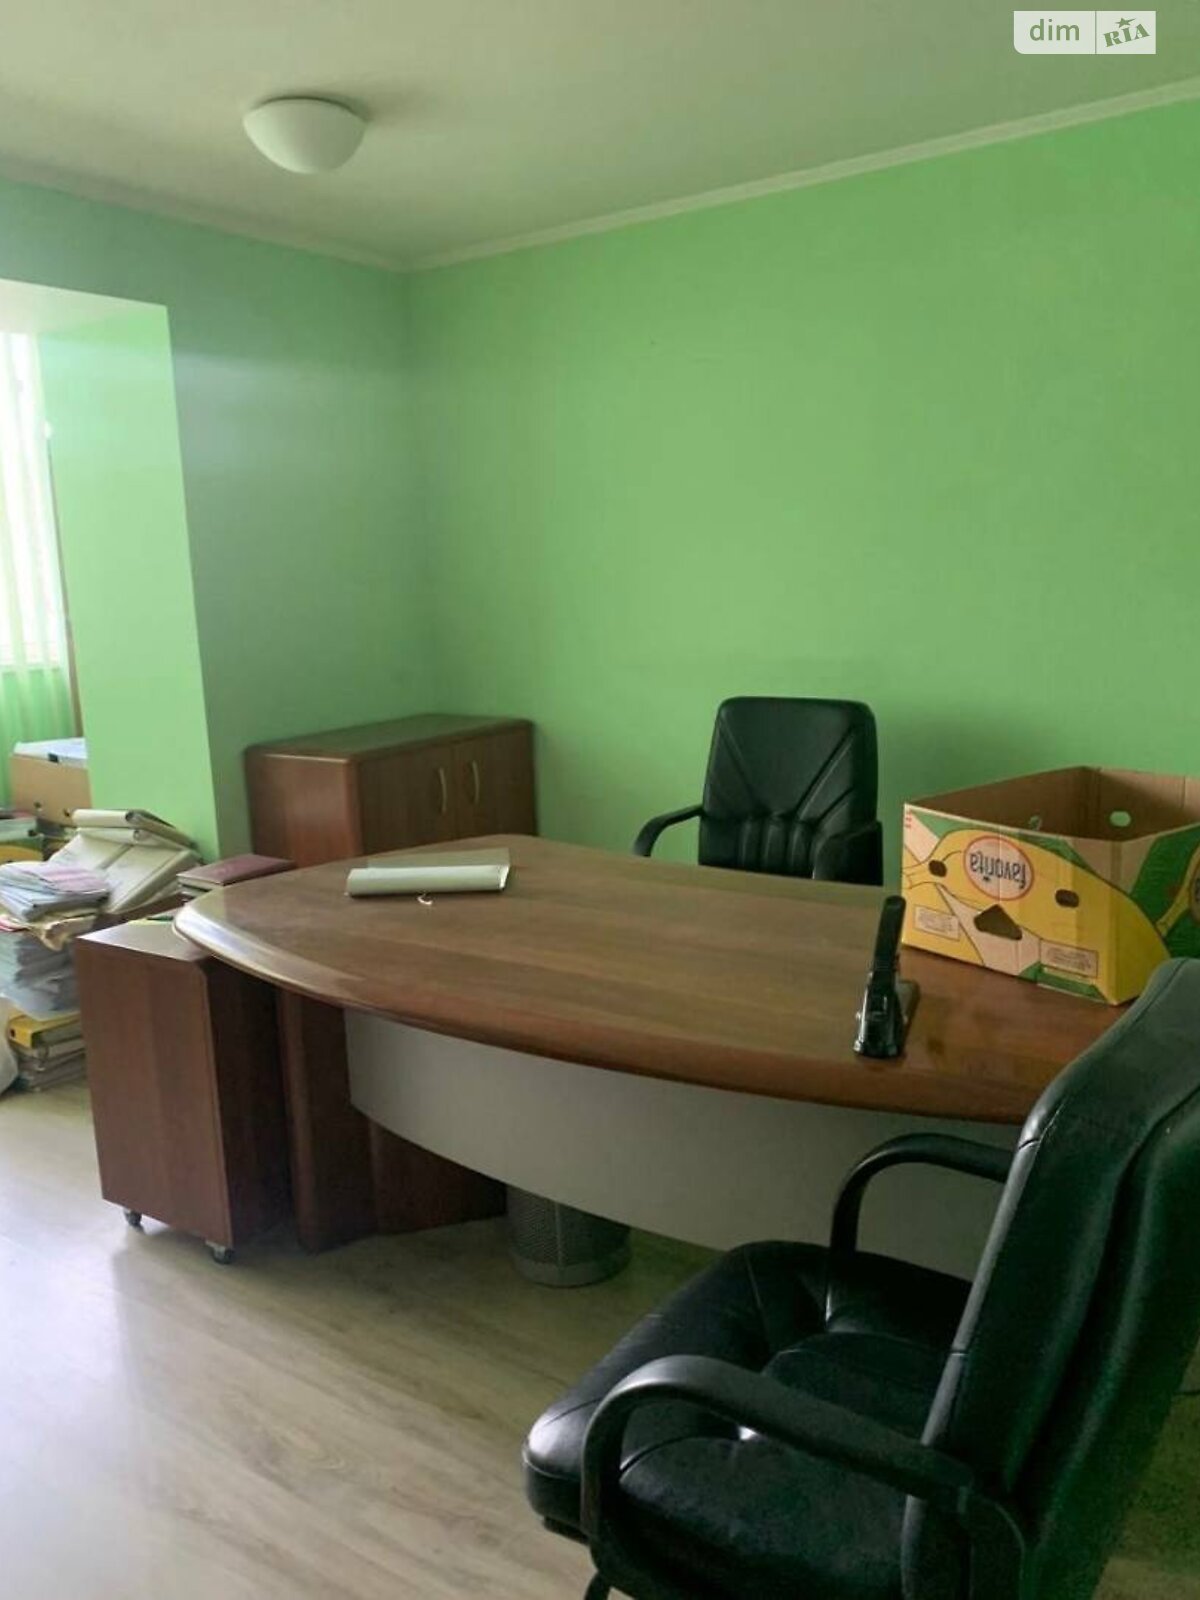 Аренда офисного помещения в Днепре, Любарского улица 36, помещений - 5, этаж - 1 фото 1